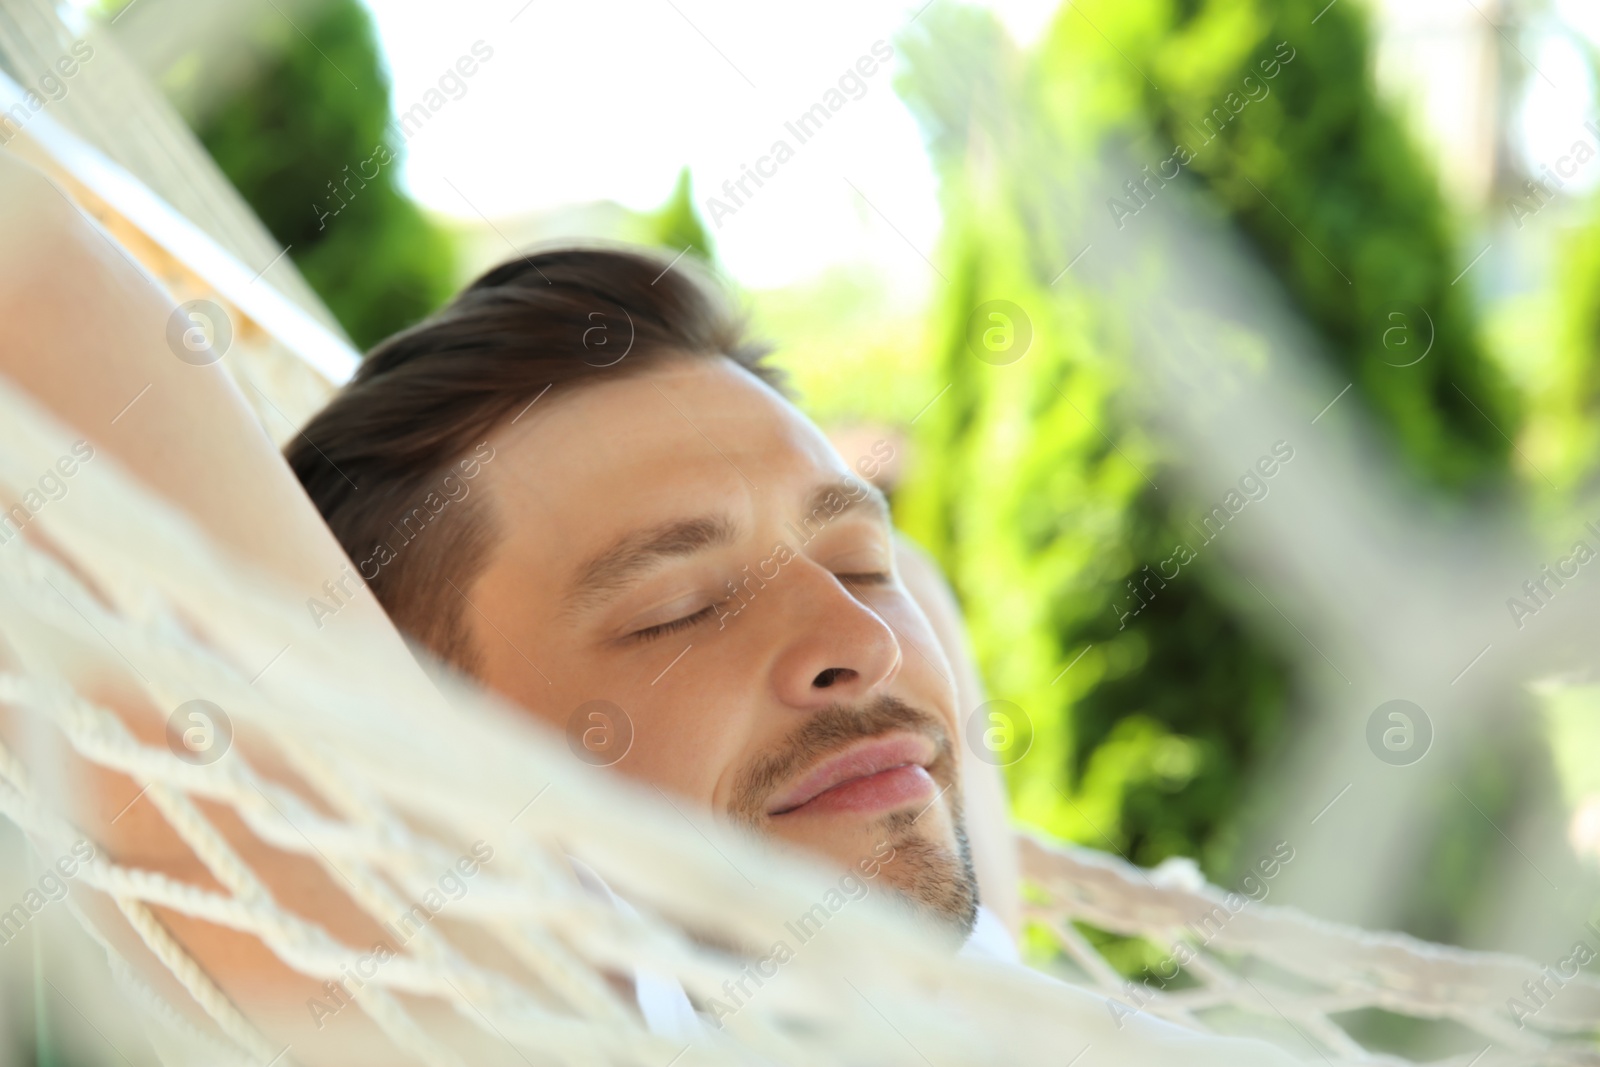 Photo of Man sleeping in hammock outdoors on warm summer day